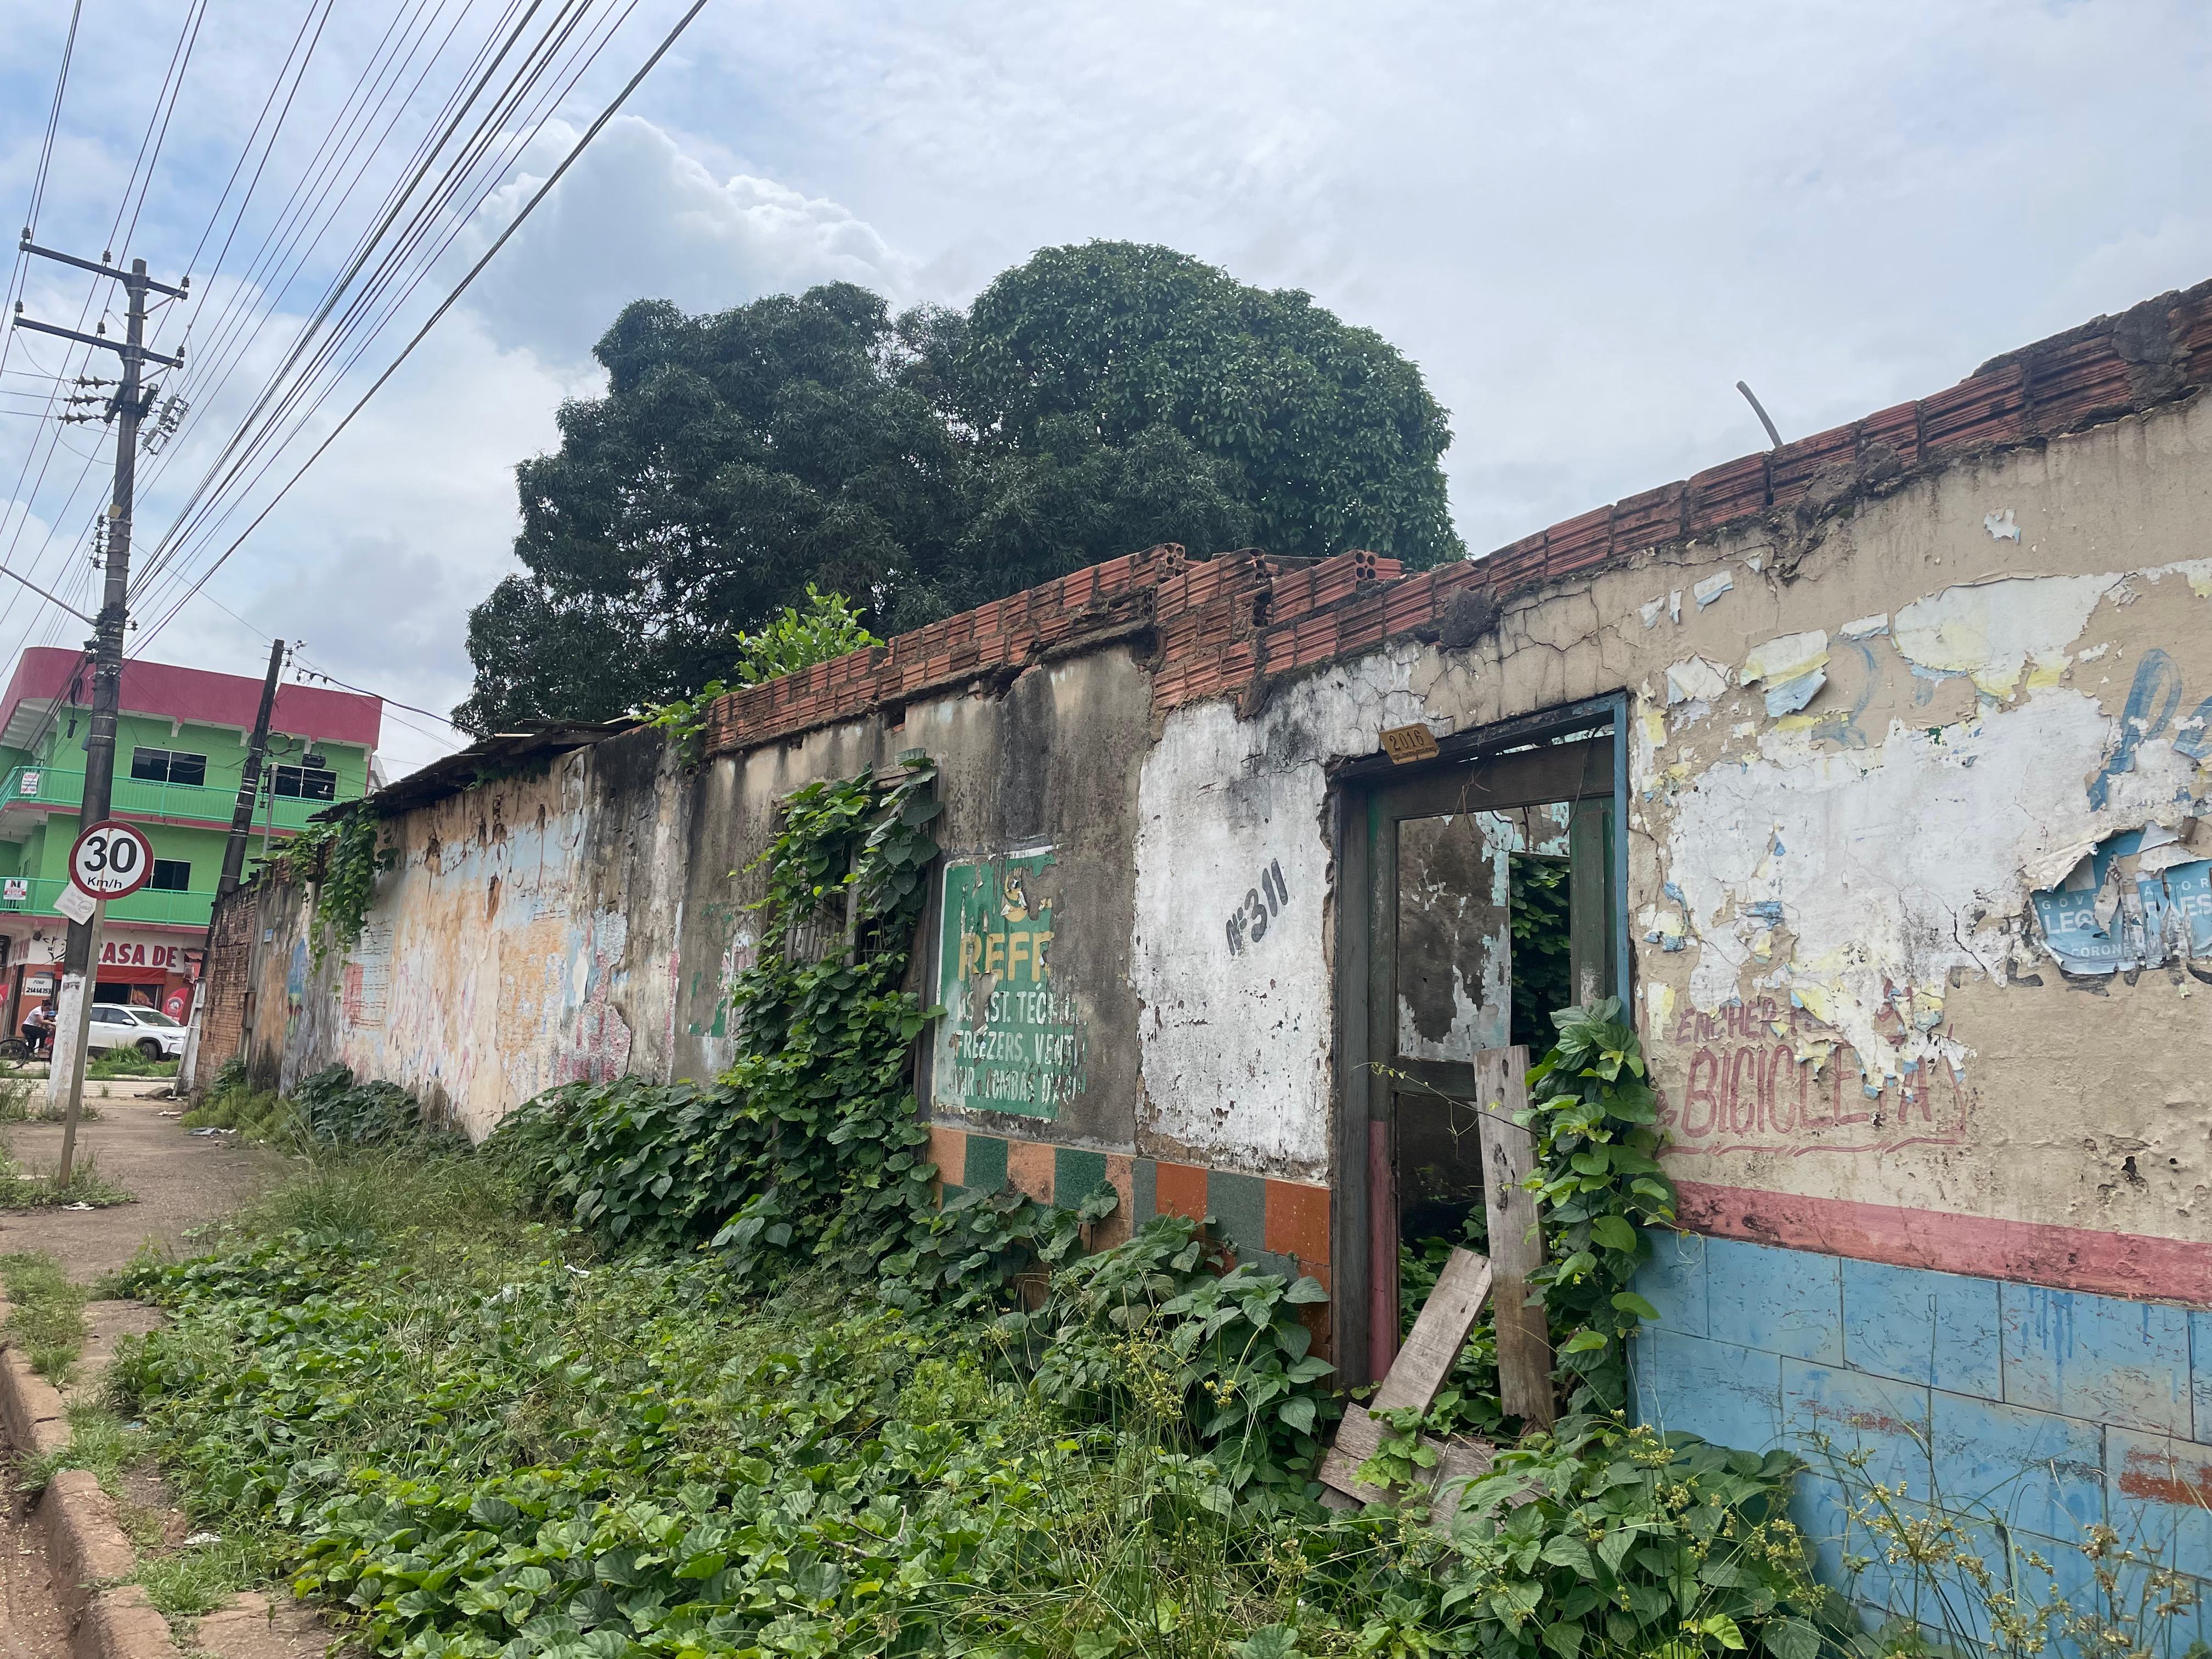 ABANDONADO: Terreno baldio preocupa moradores do São Sebastião em Porto Velho